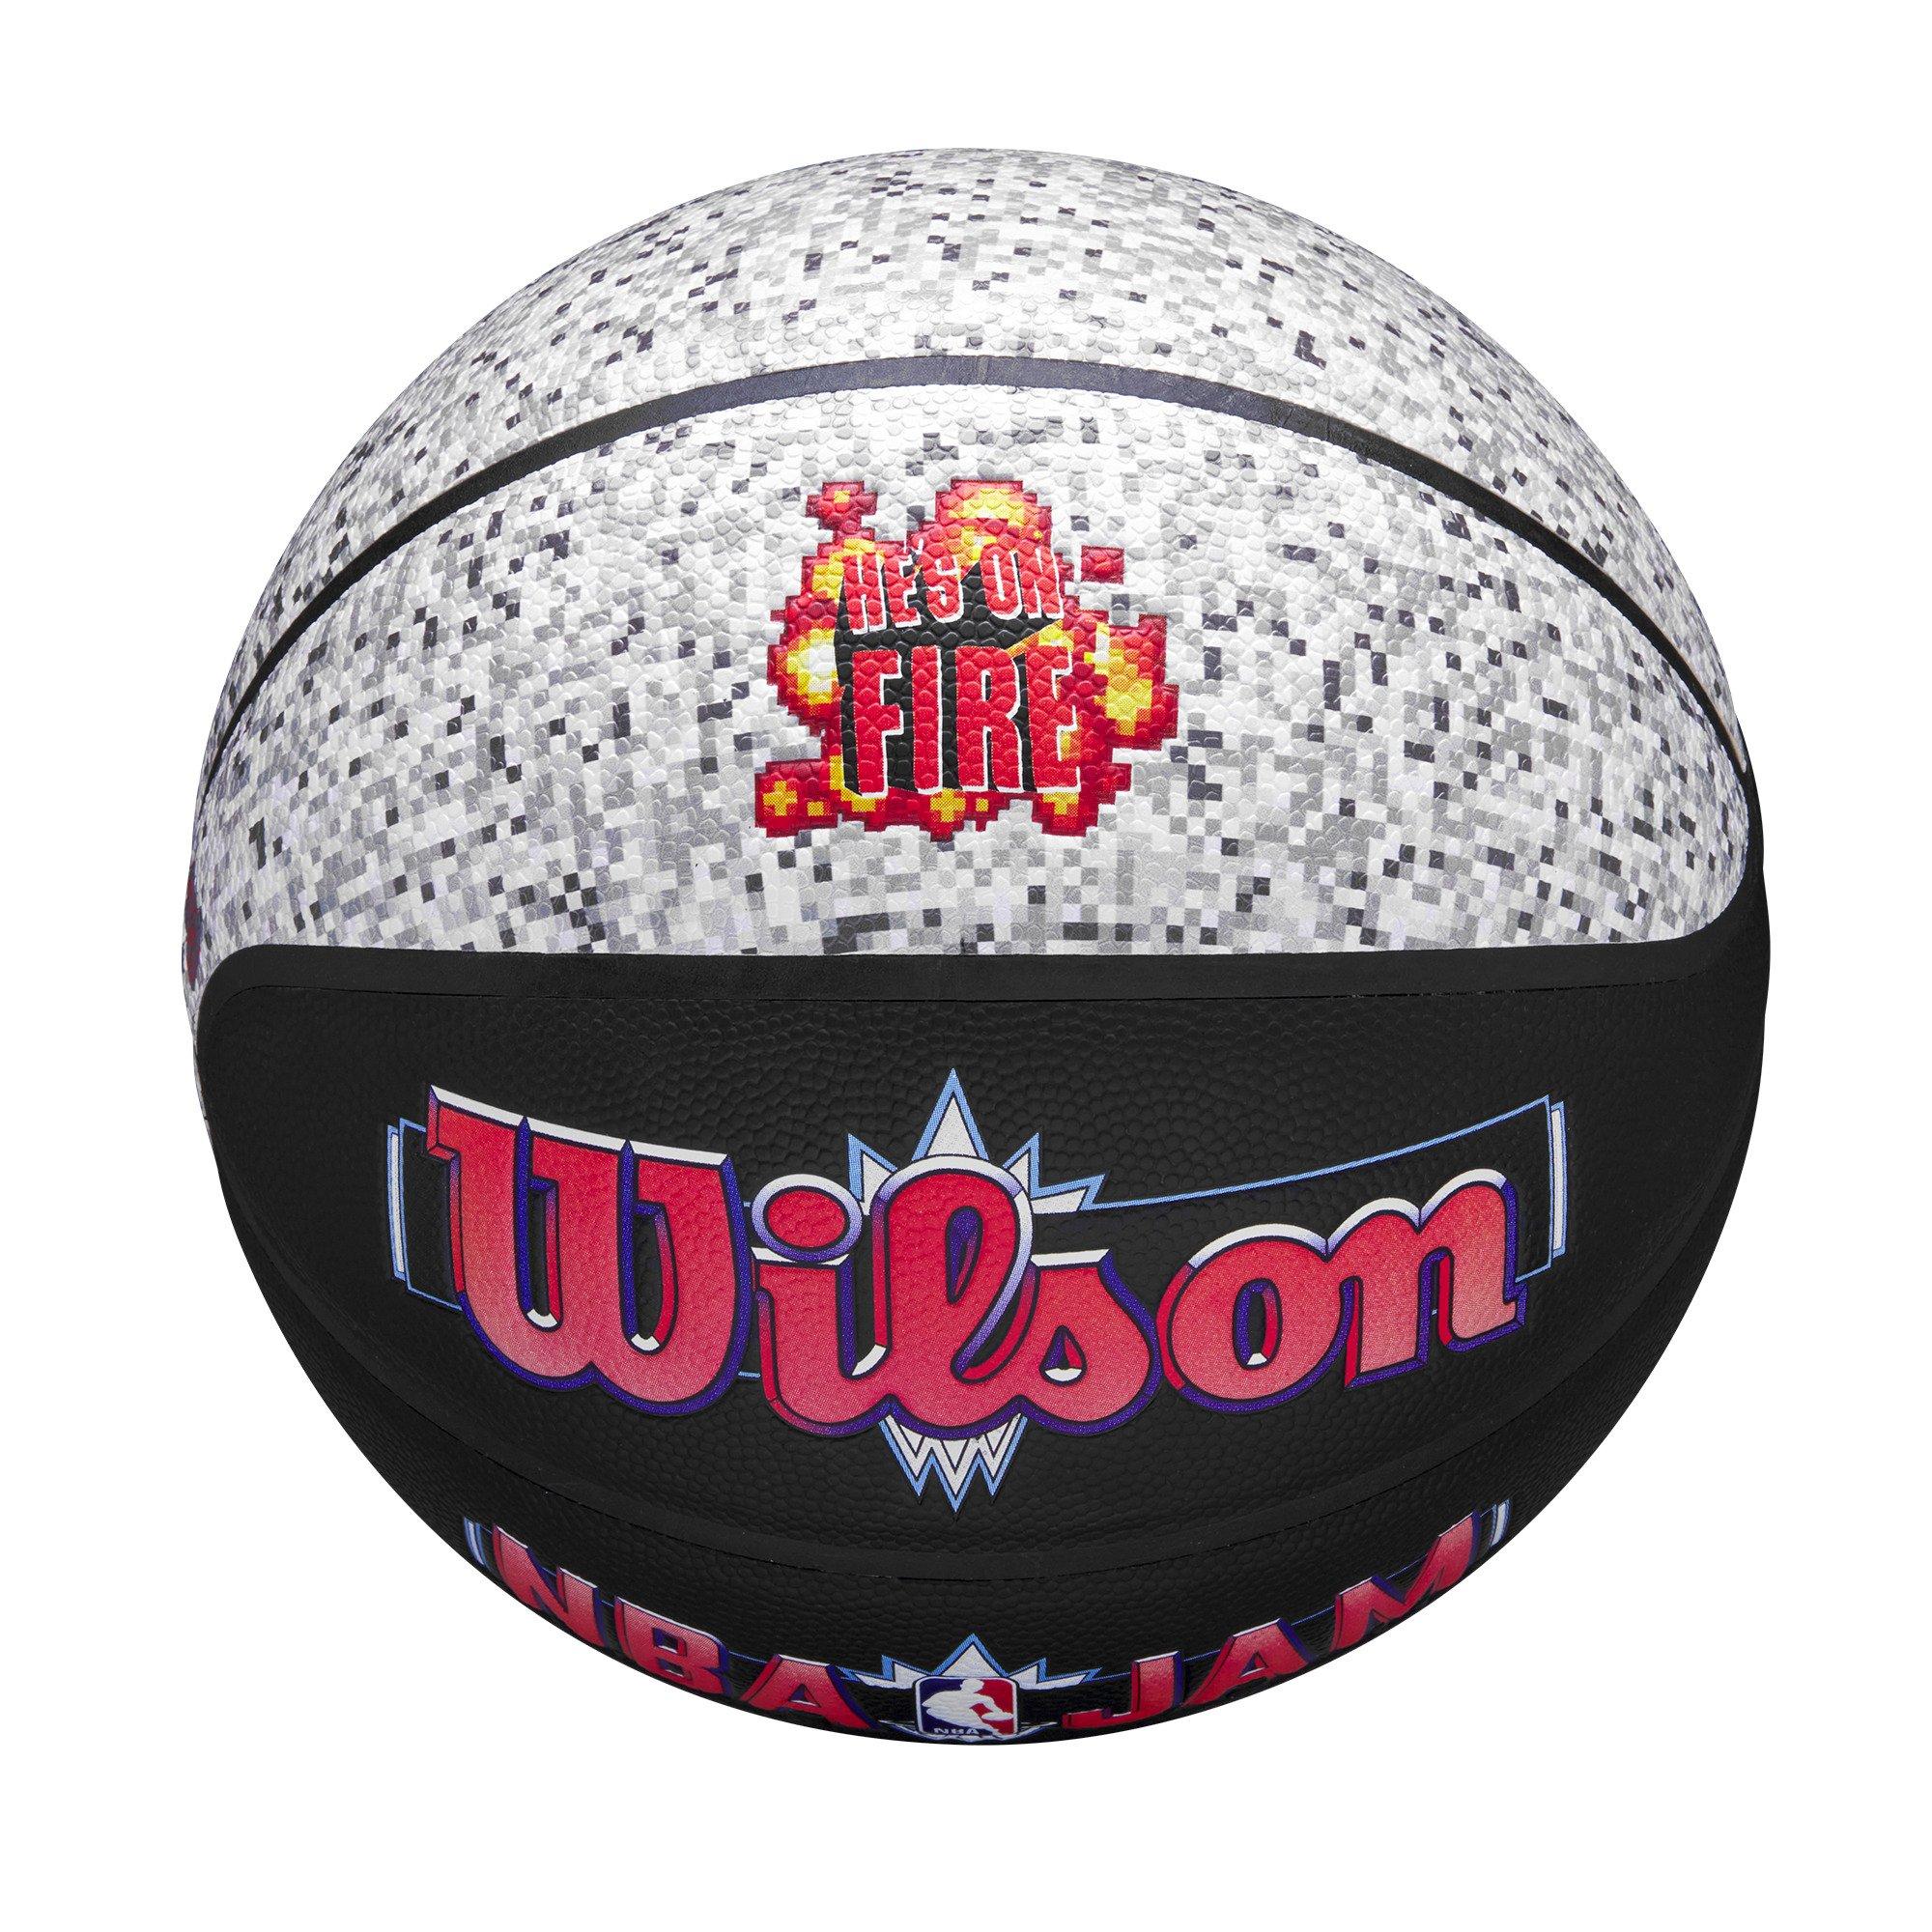 Wilson NBA Authentic Indoor/Outdoor Basketball 29.5 - Hibbett